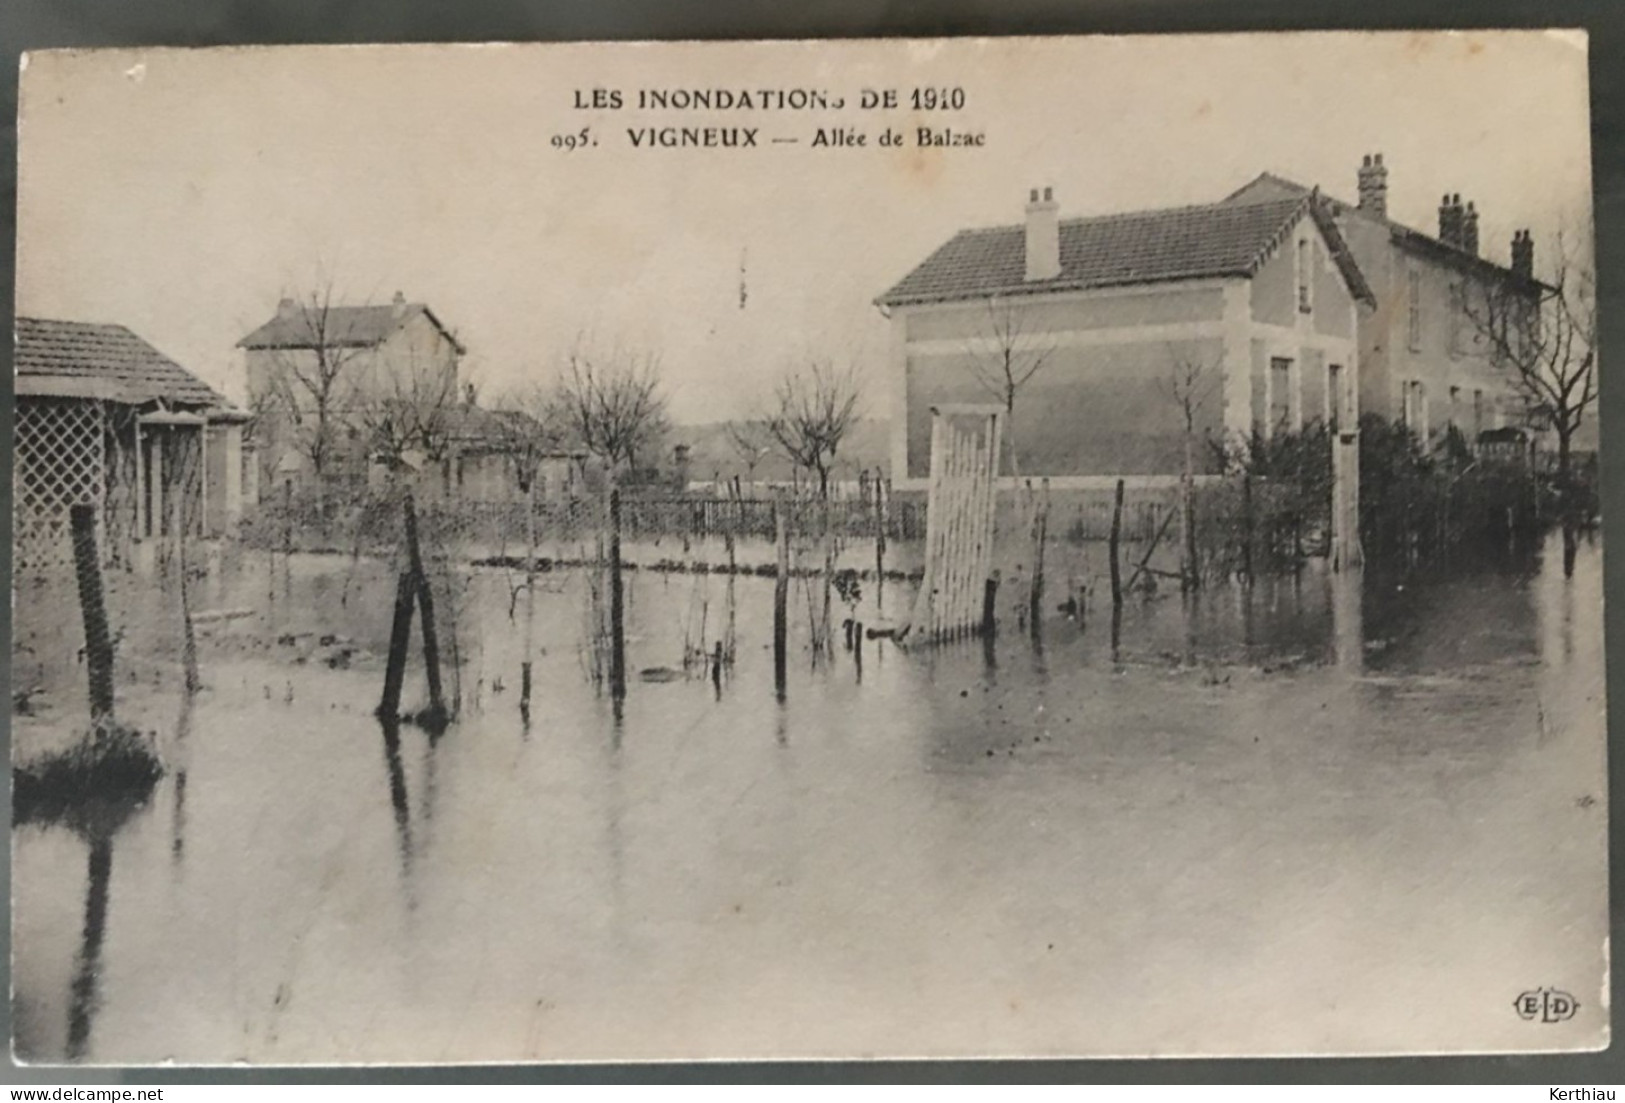 Vigneux - Les inondations de 1910 - 5 CPA avec vues différentes, dont 2 animées. Non circulées